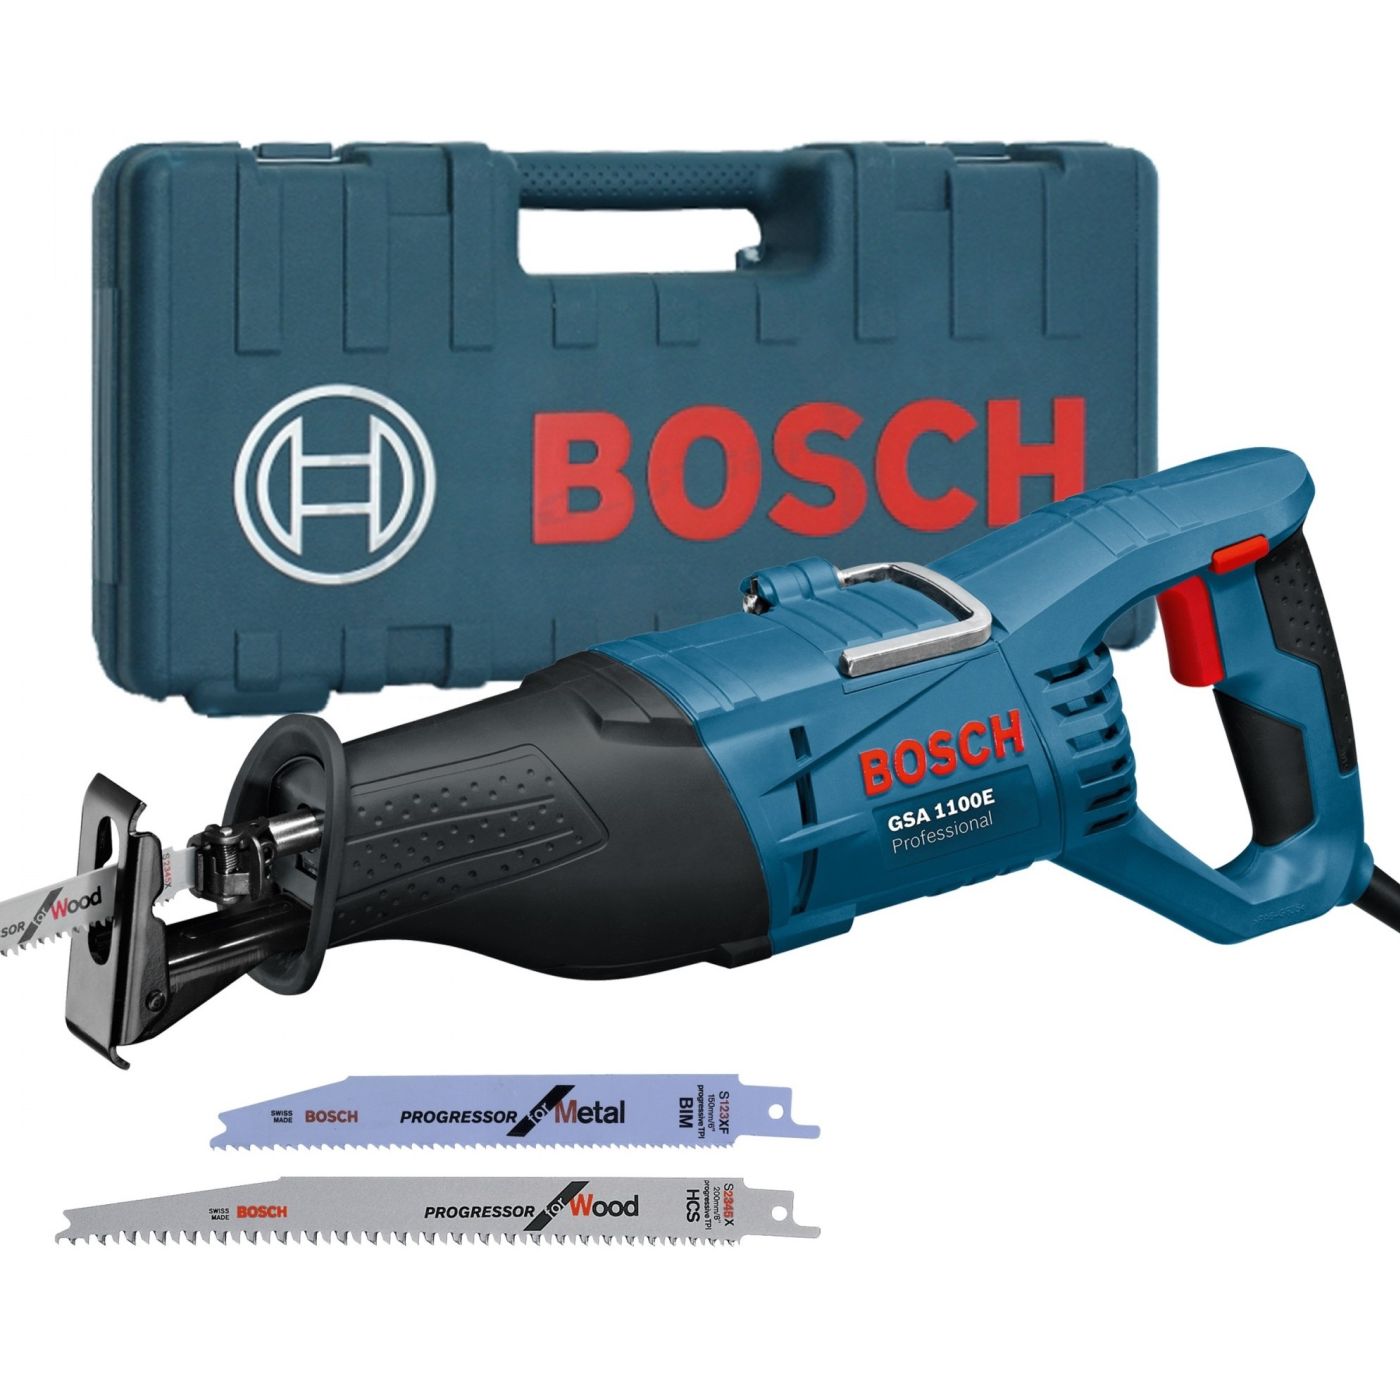 Universaalsaag Bosch GSA 1100 E Professional tiigersaag